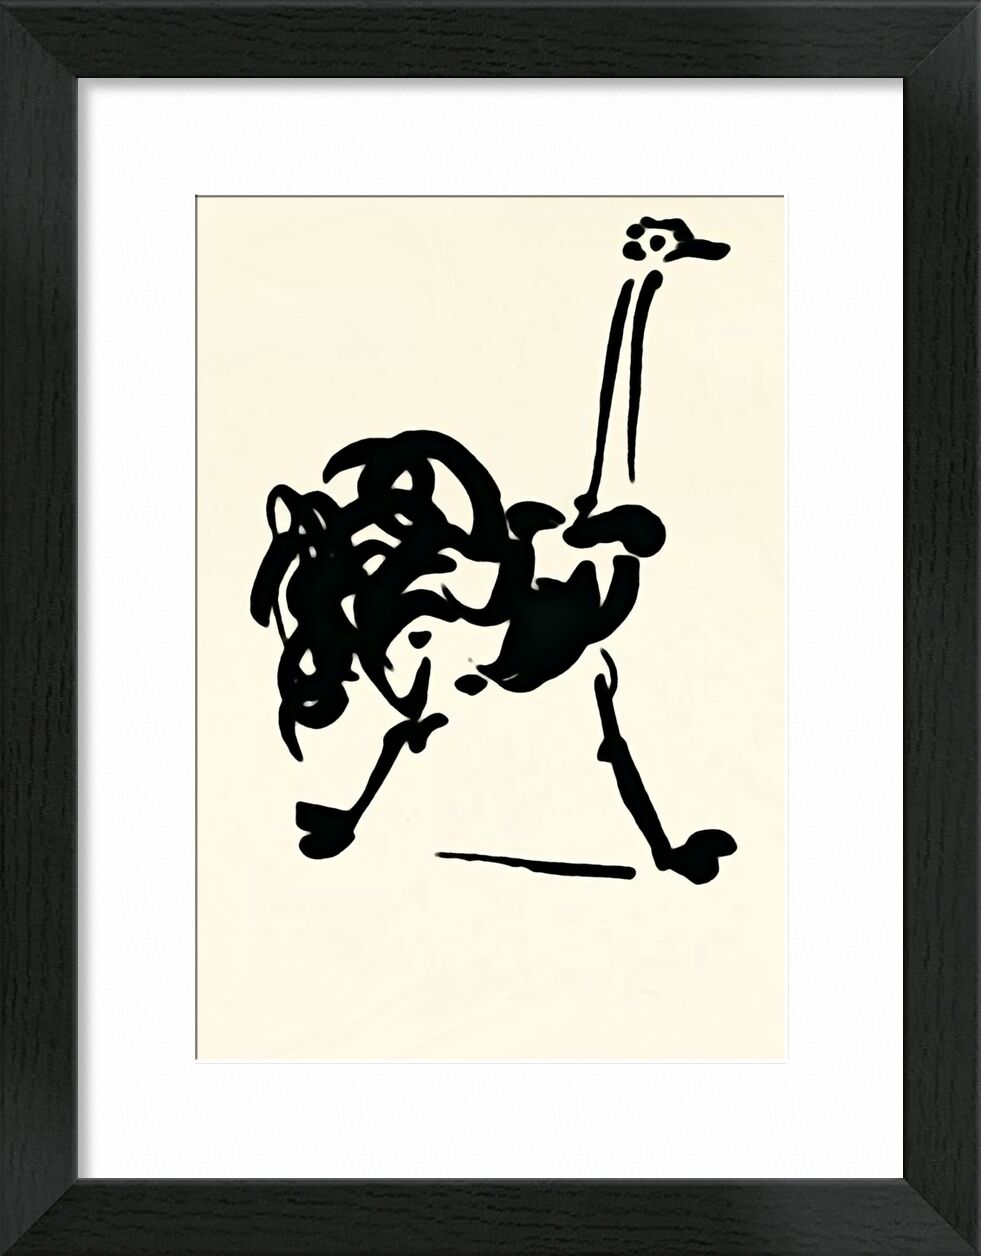 The Ostrich - Picasso desde Bellas artes, Prodi Art, Avestruz, dibujo lineal, dibujo, picasso